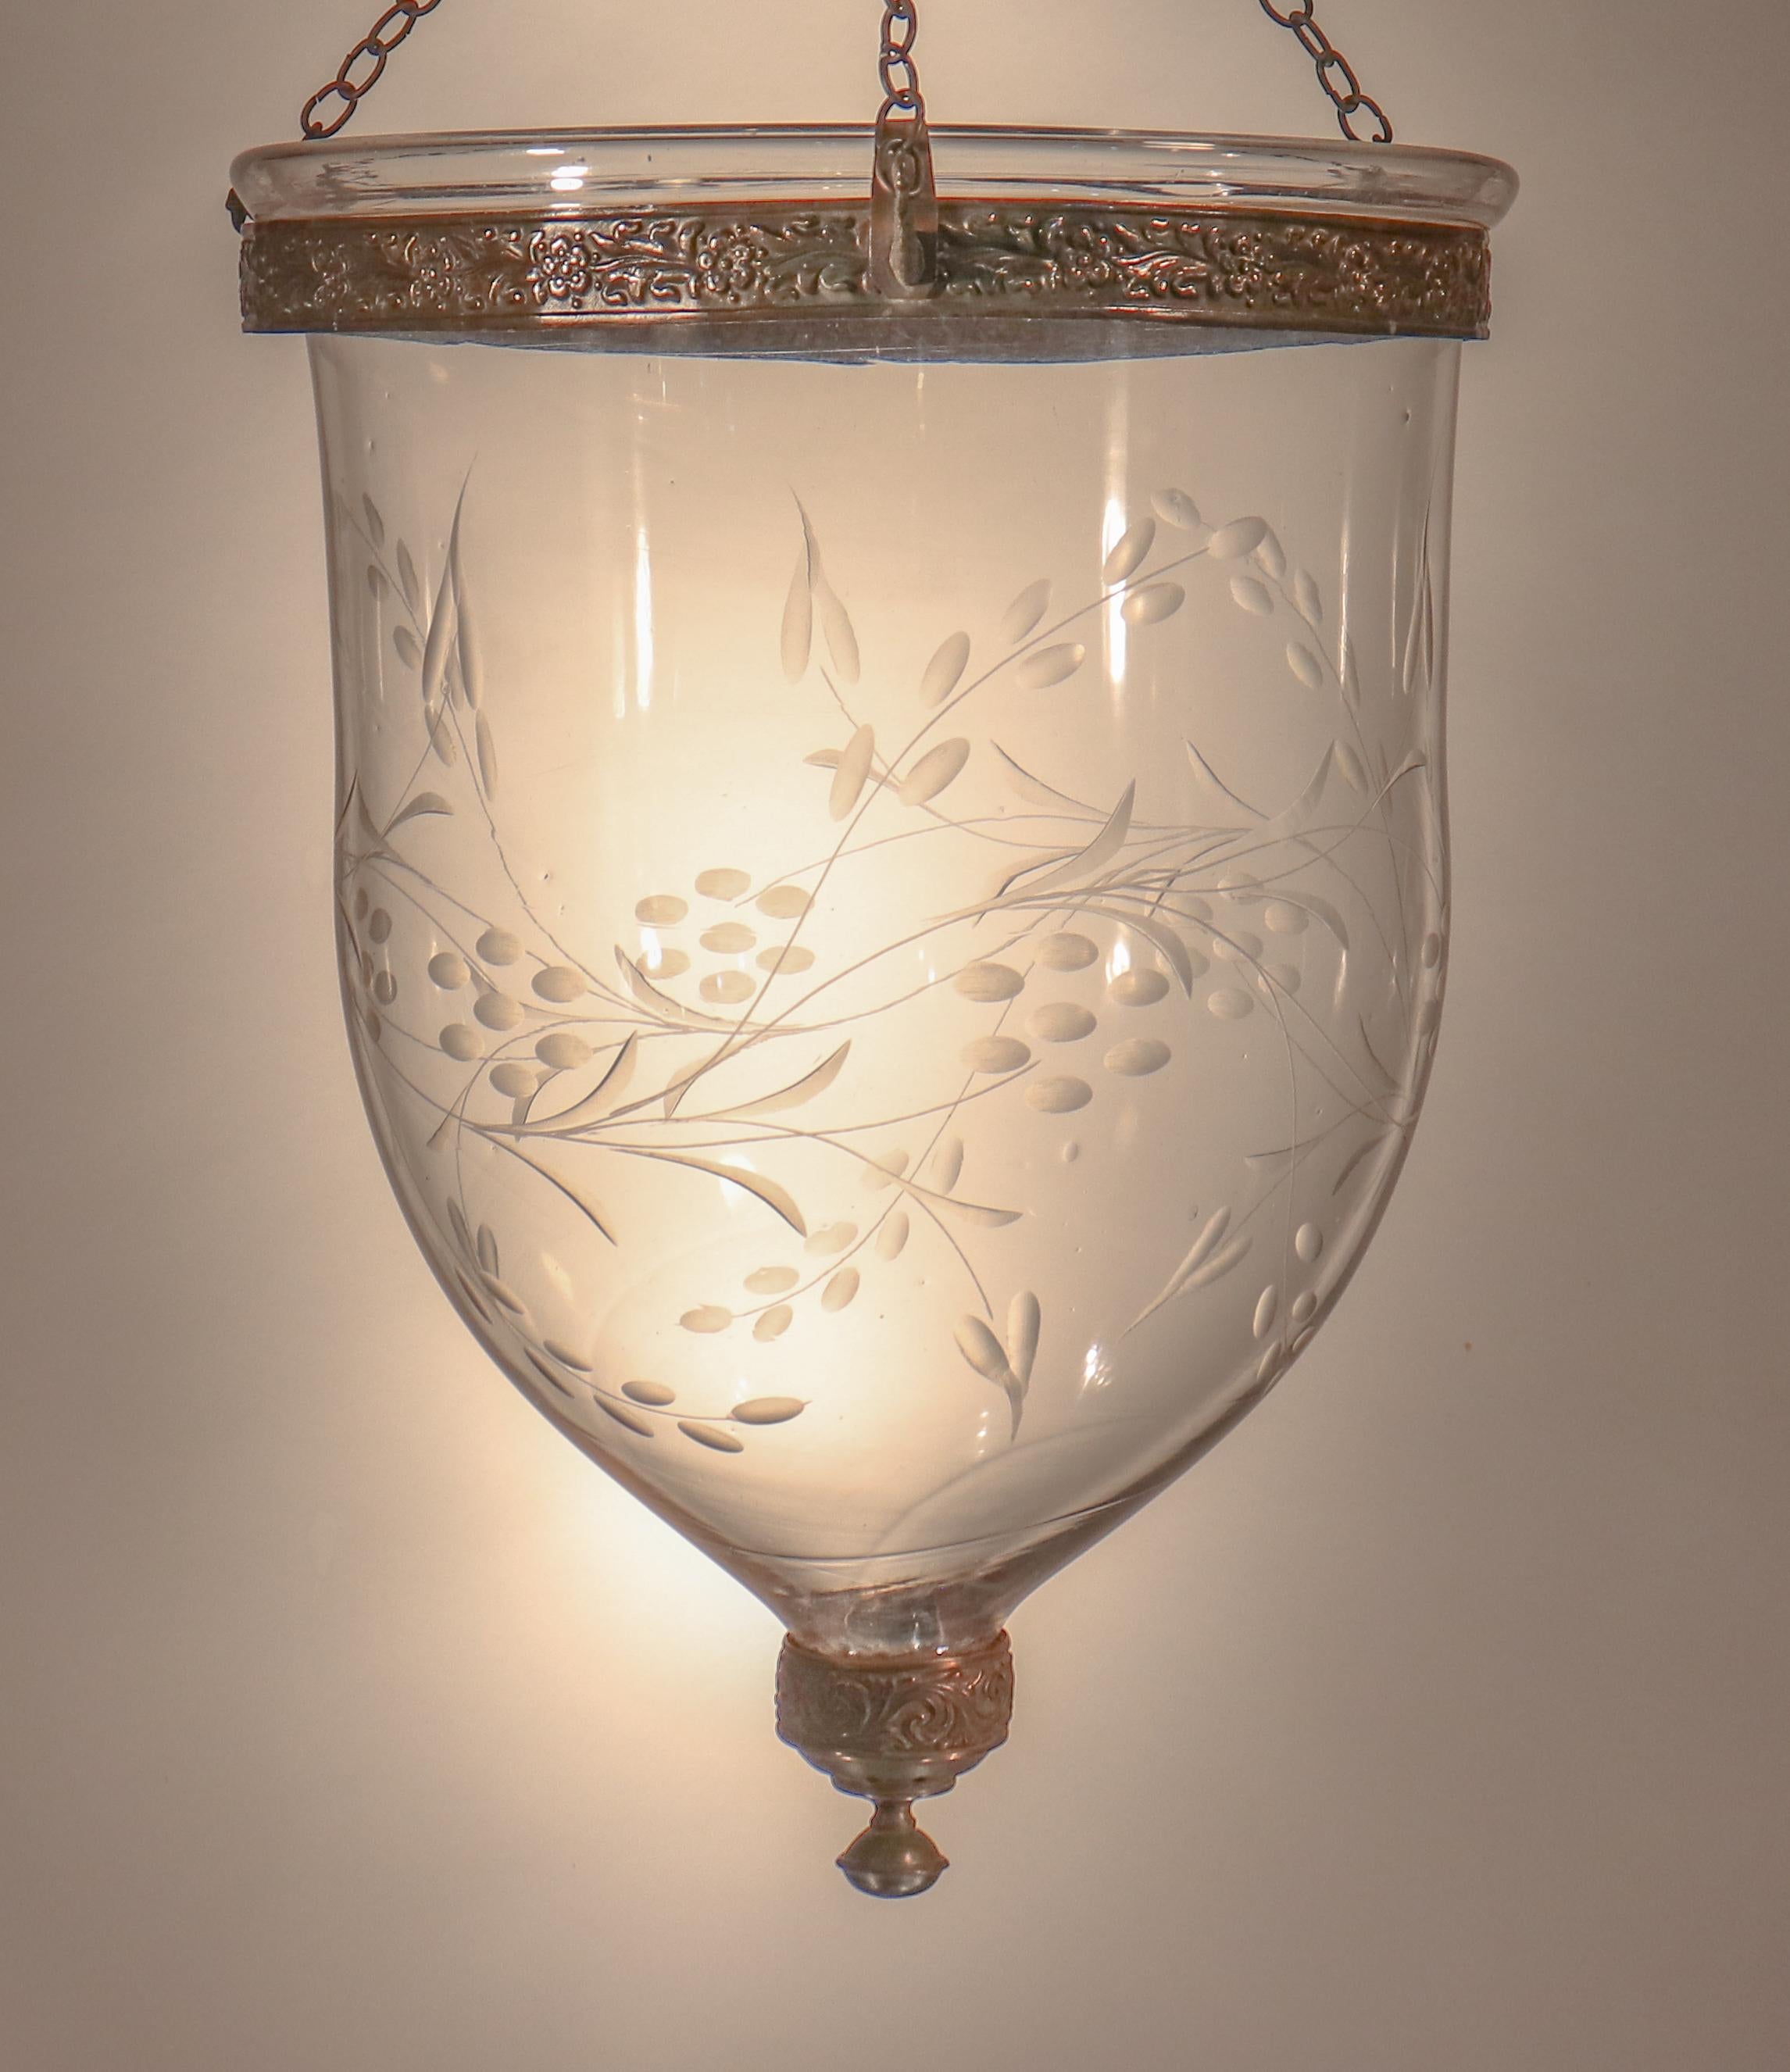 Antique Bell Jar Lantern with Vine Etching 4